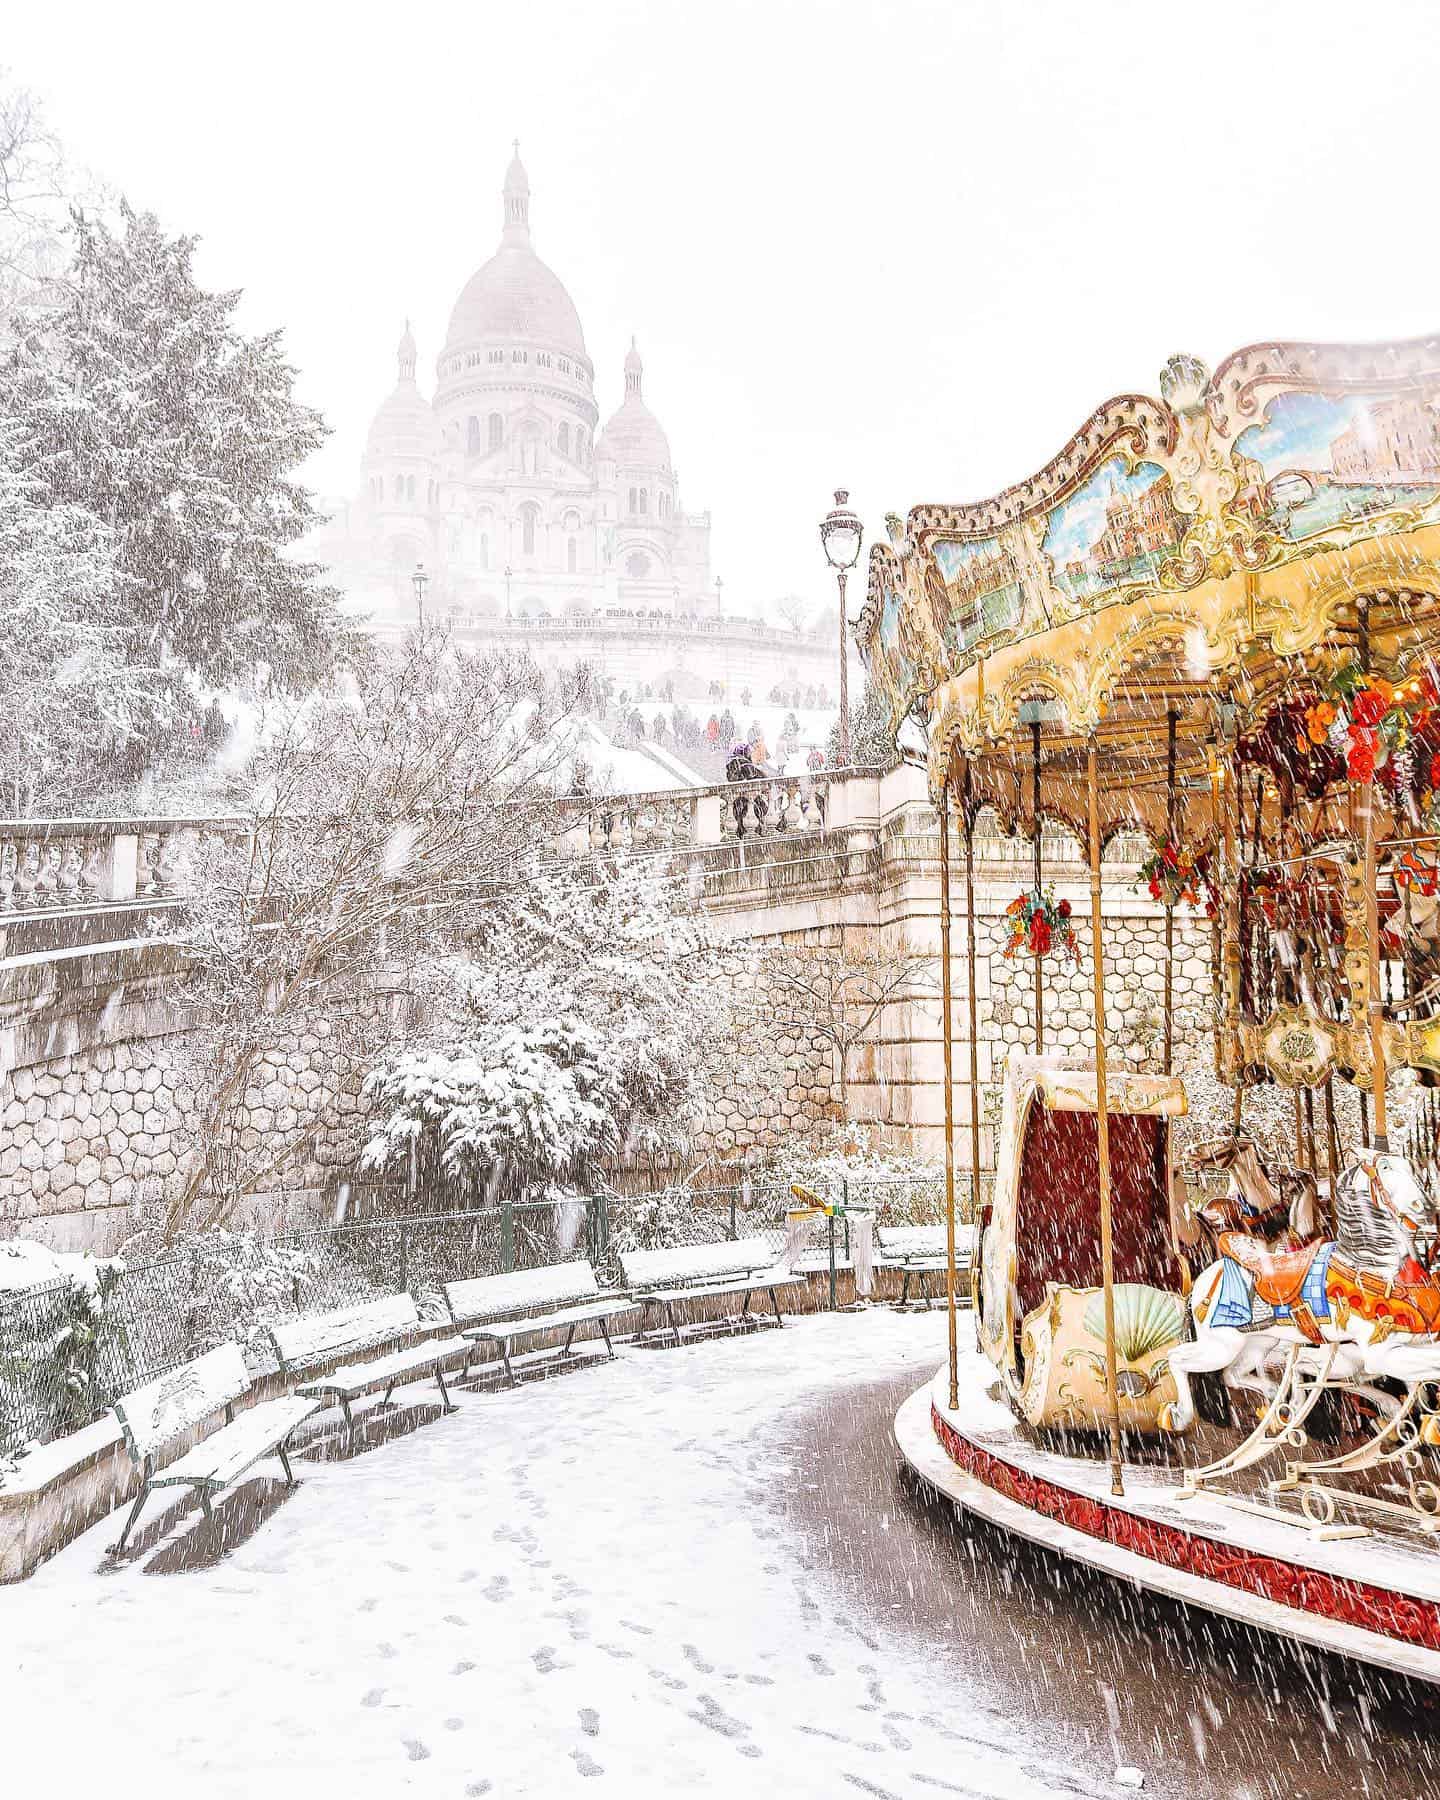 Magical snow photos of Paris